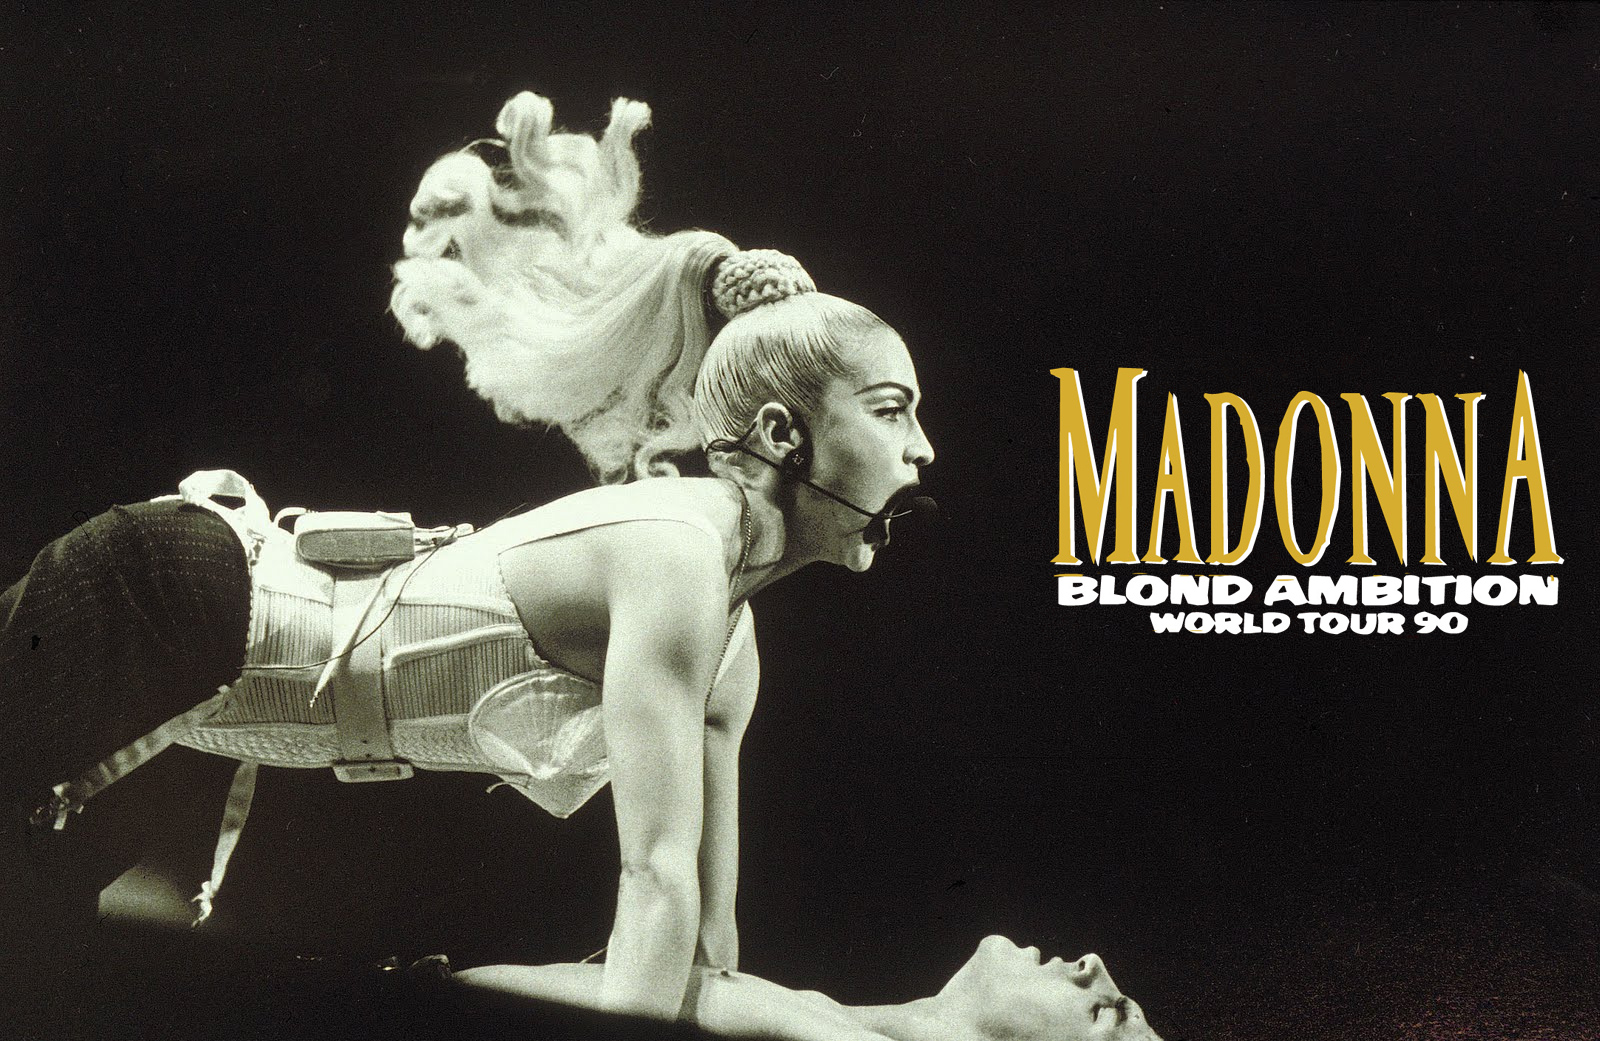 Madonna Blonde Ambition World Tour 22